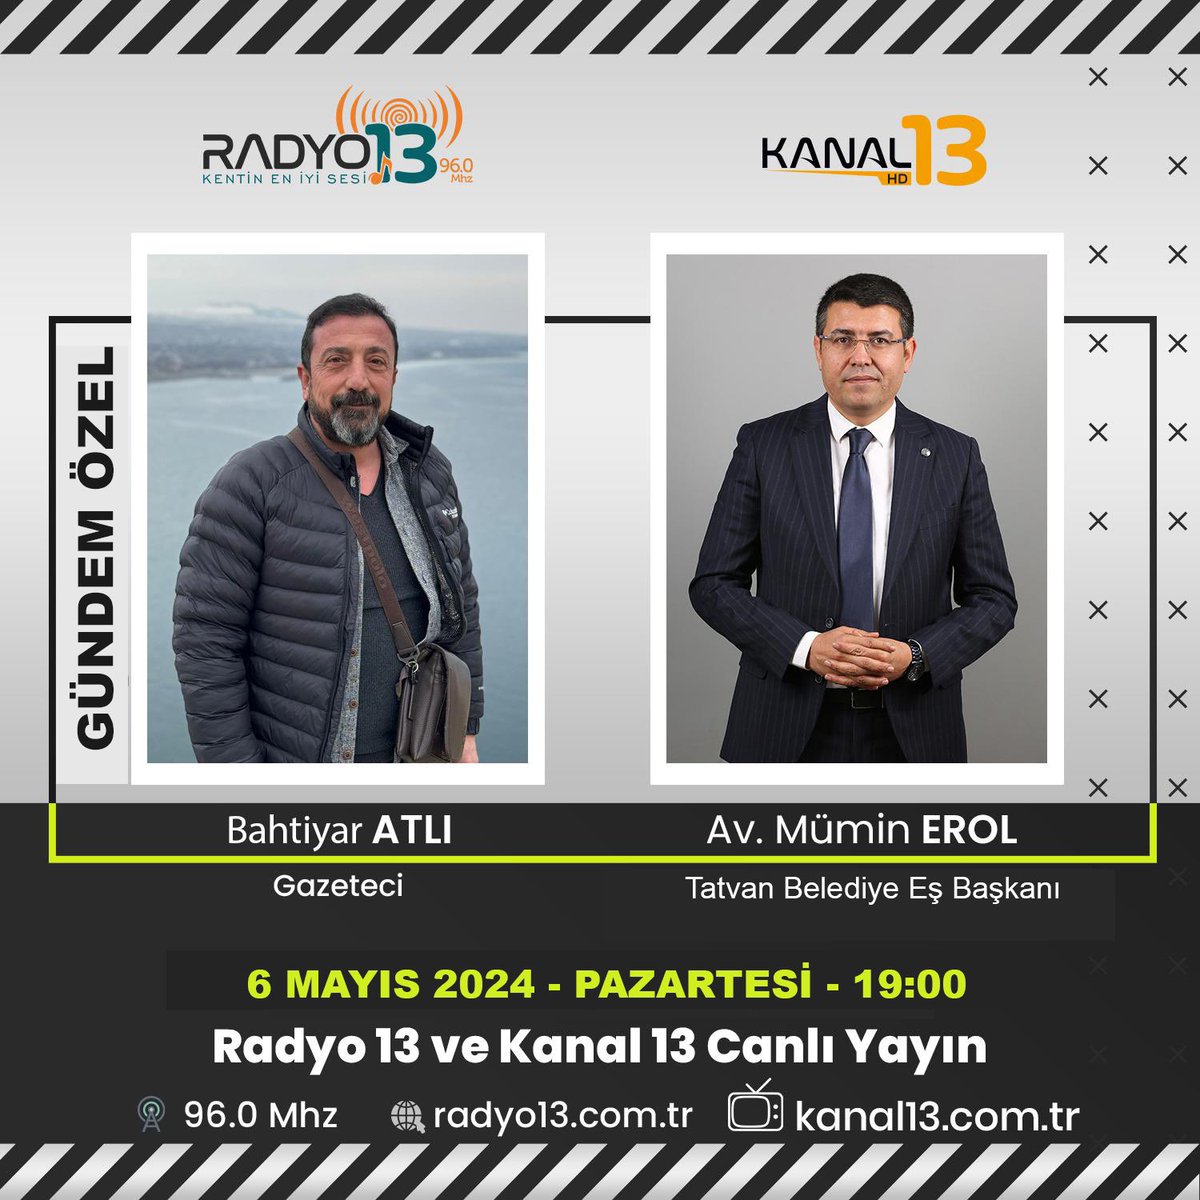 Gazeteci Bahtiyar Atlı'nın sunduğu Bitlis'te Gündem programına Tatvan Belediye Eş Başkanı olarak konuk oluyorum.

6 Mayıs Pazartesi akşam saat 19.00

Radyo 13: radyo13.com.tr
MHZ: Bitlis: 95.8 Tatvan: 96.0
Canlı Yayın: kanal13.com.tr